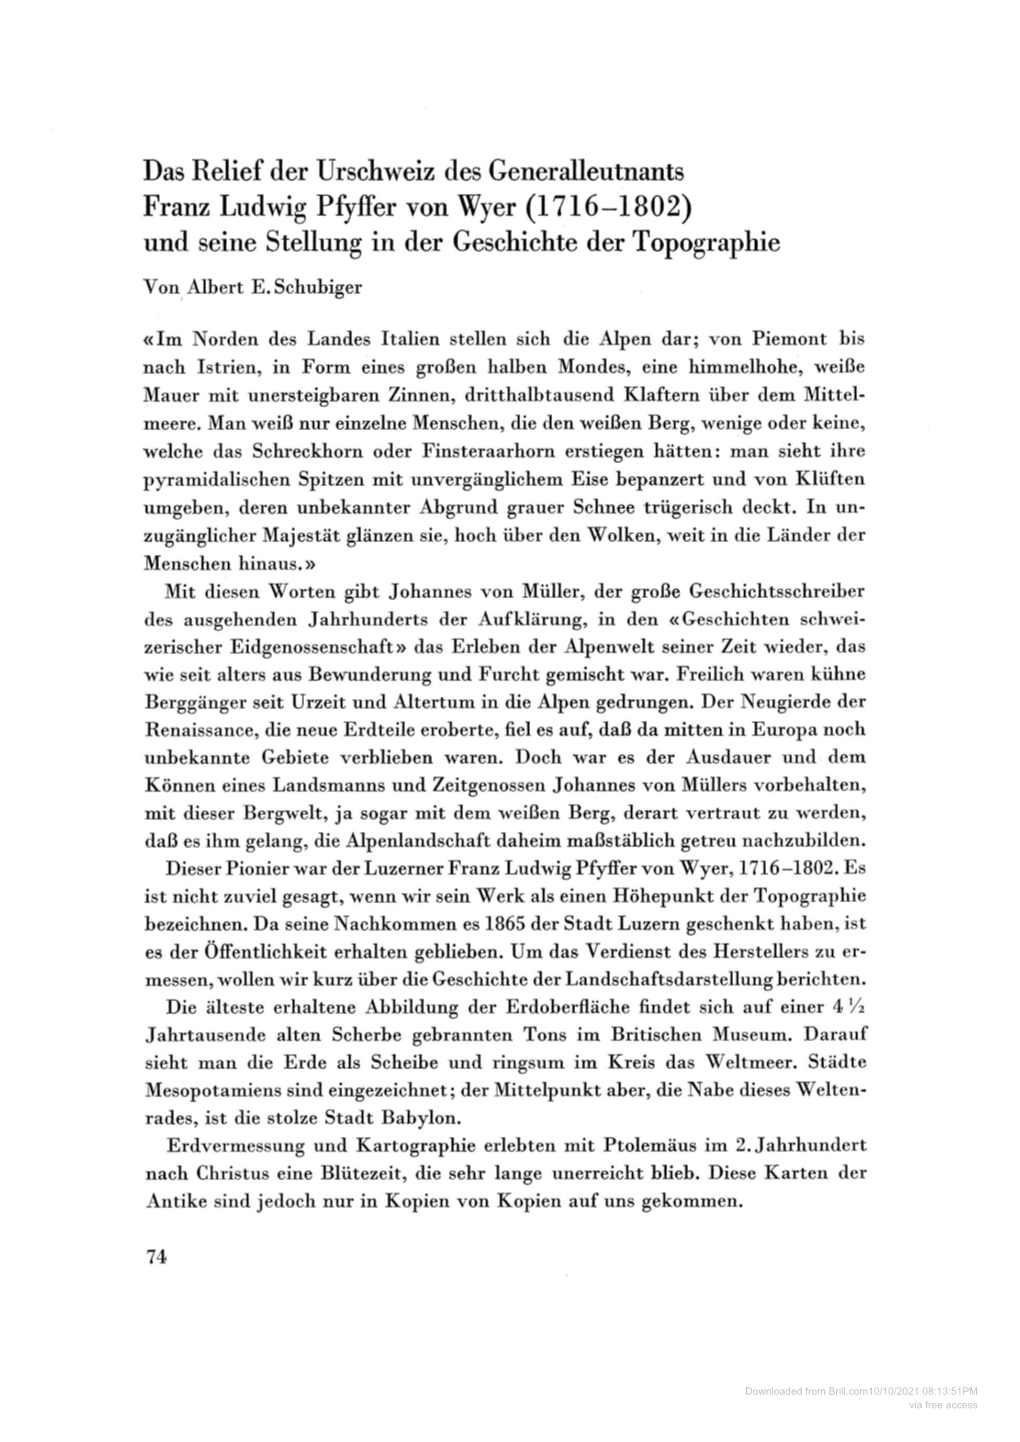 Das Relief Der Urschweiz Des Generalleutnants Franz Ludwig Pfyffer Von Wyer (1716-1802) Und Seine Stellung in Der Geschichte Der Topographie